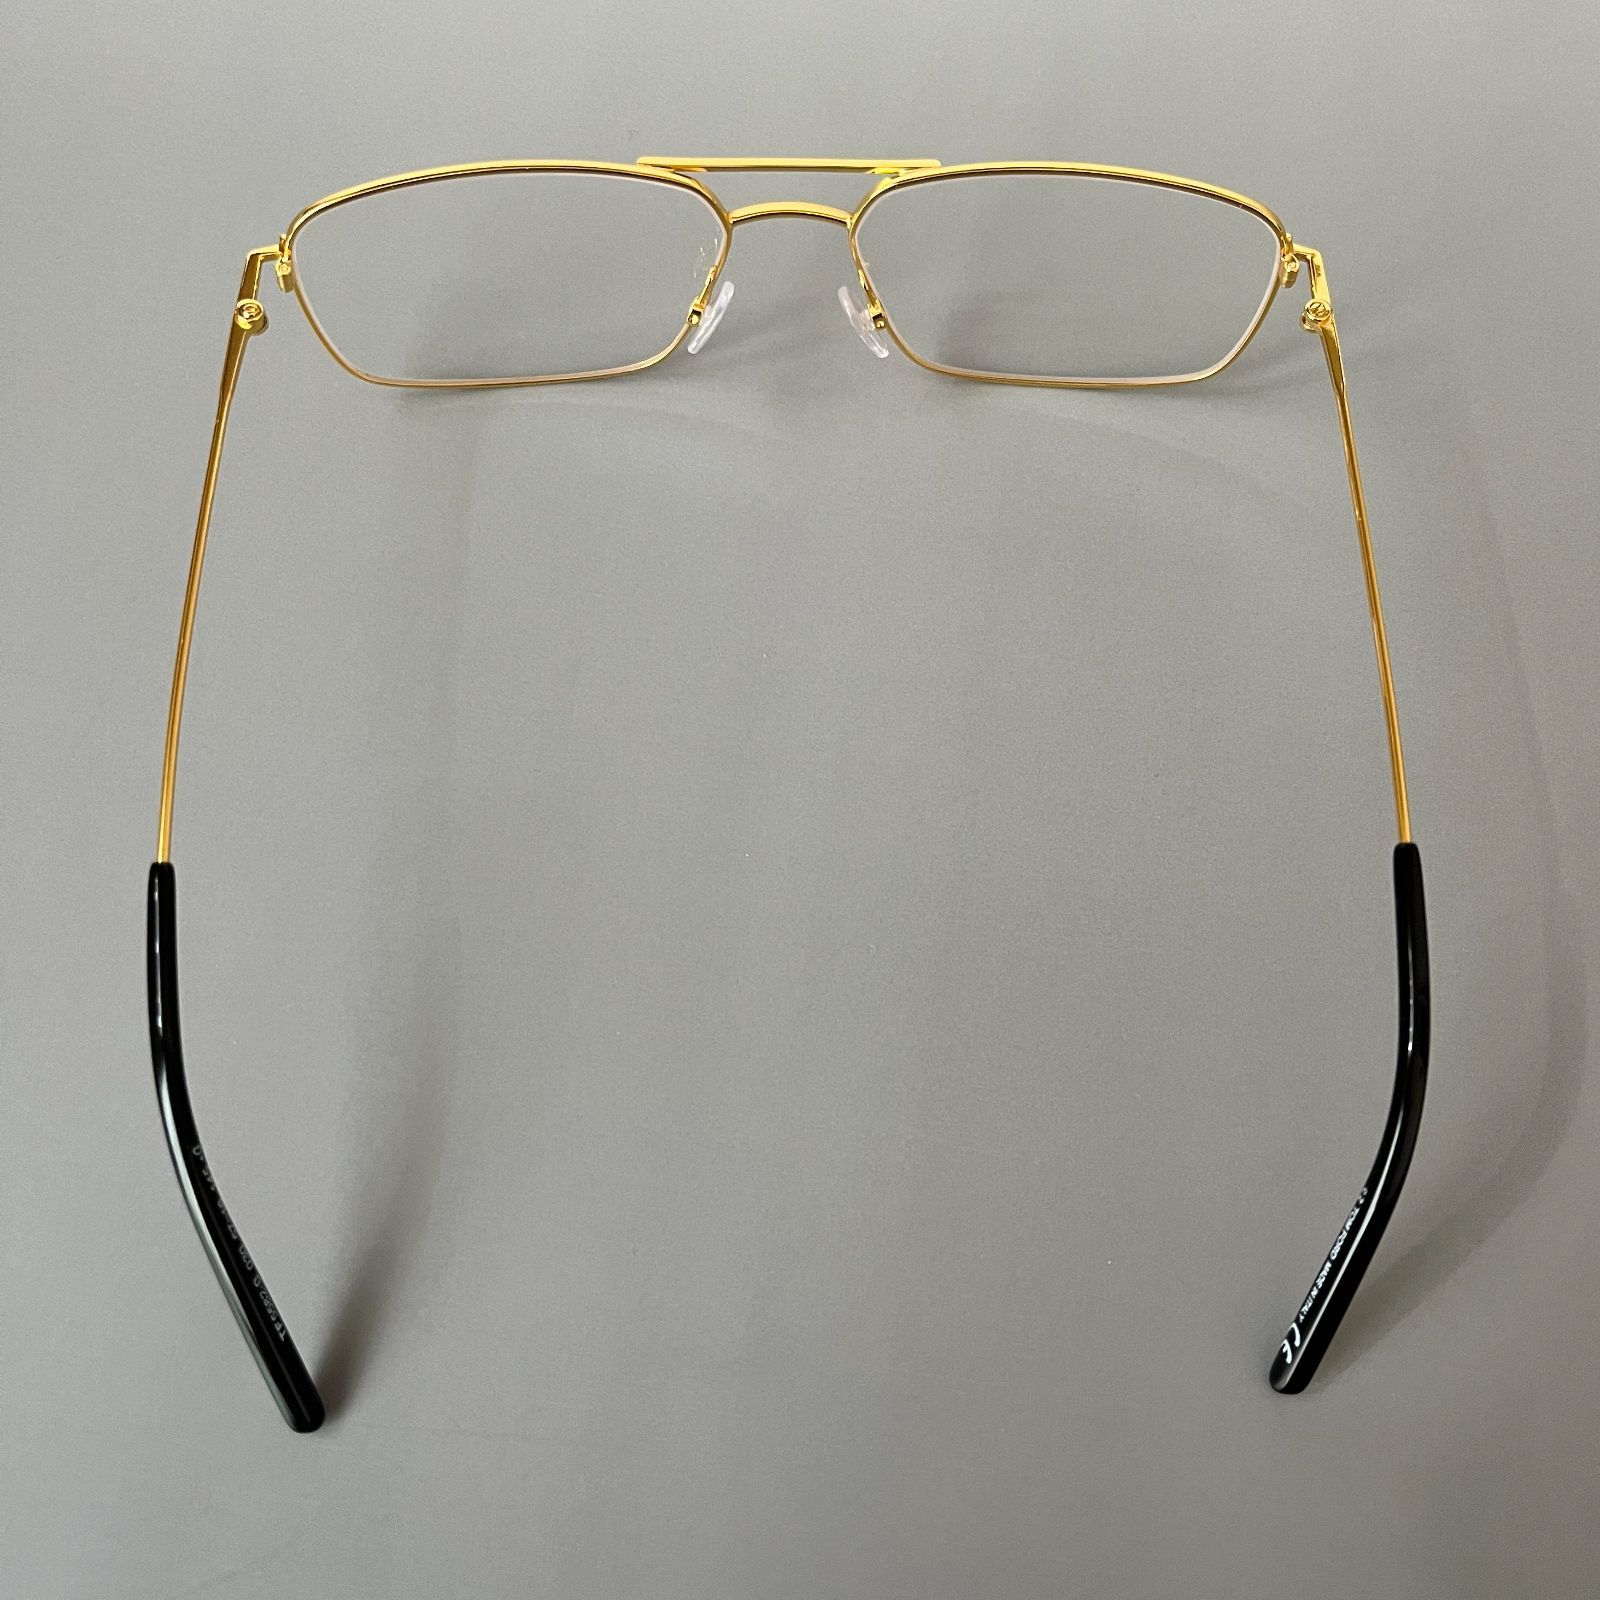 【限定SALE正規品】メガネ トムフォード スクエア ゴールド メタル ツーブリッジ 黒 金 サングラス/メガネ